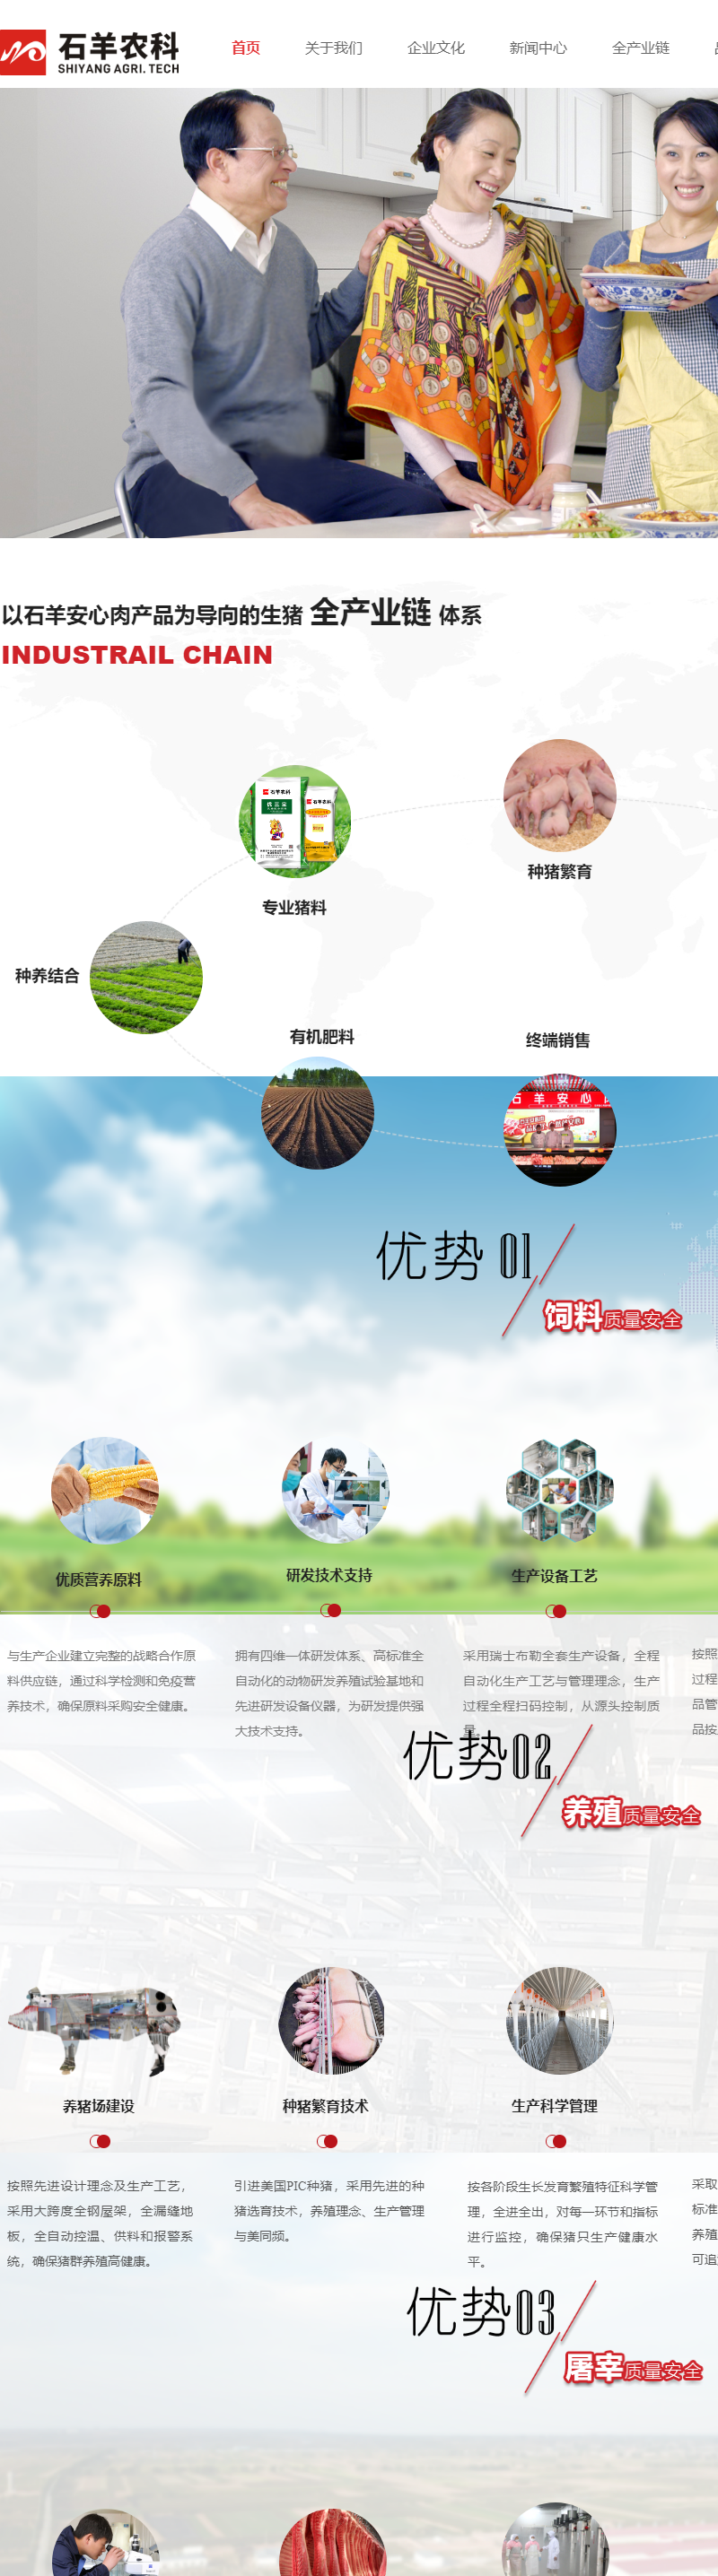 陕西石羊农业科技股份有限公司网站案例